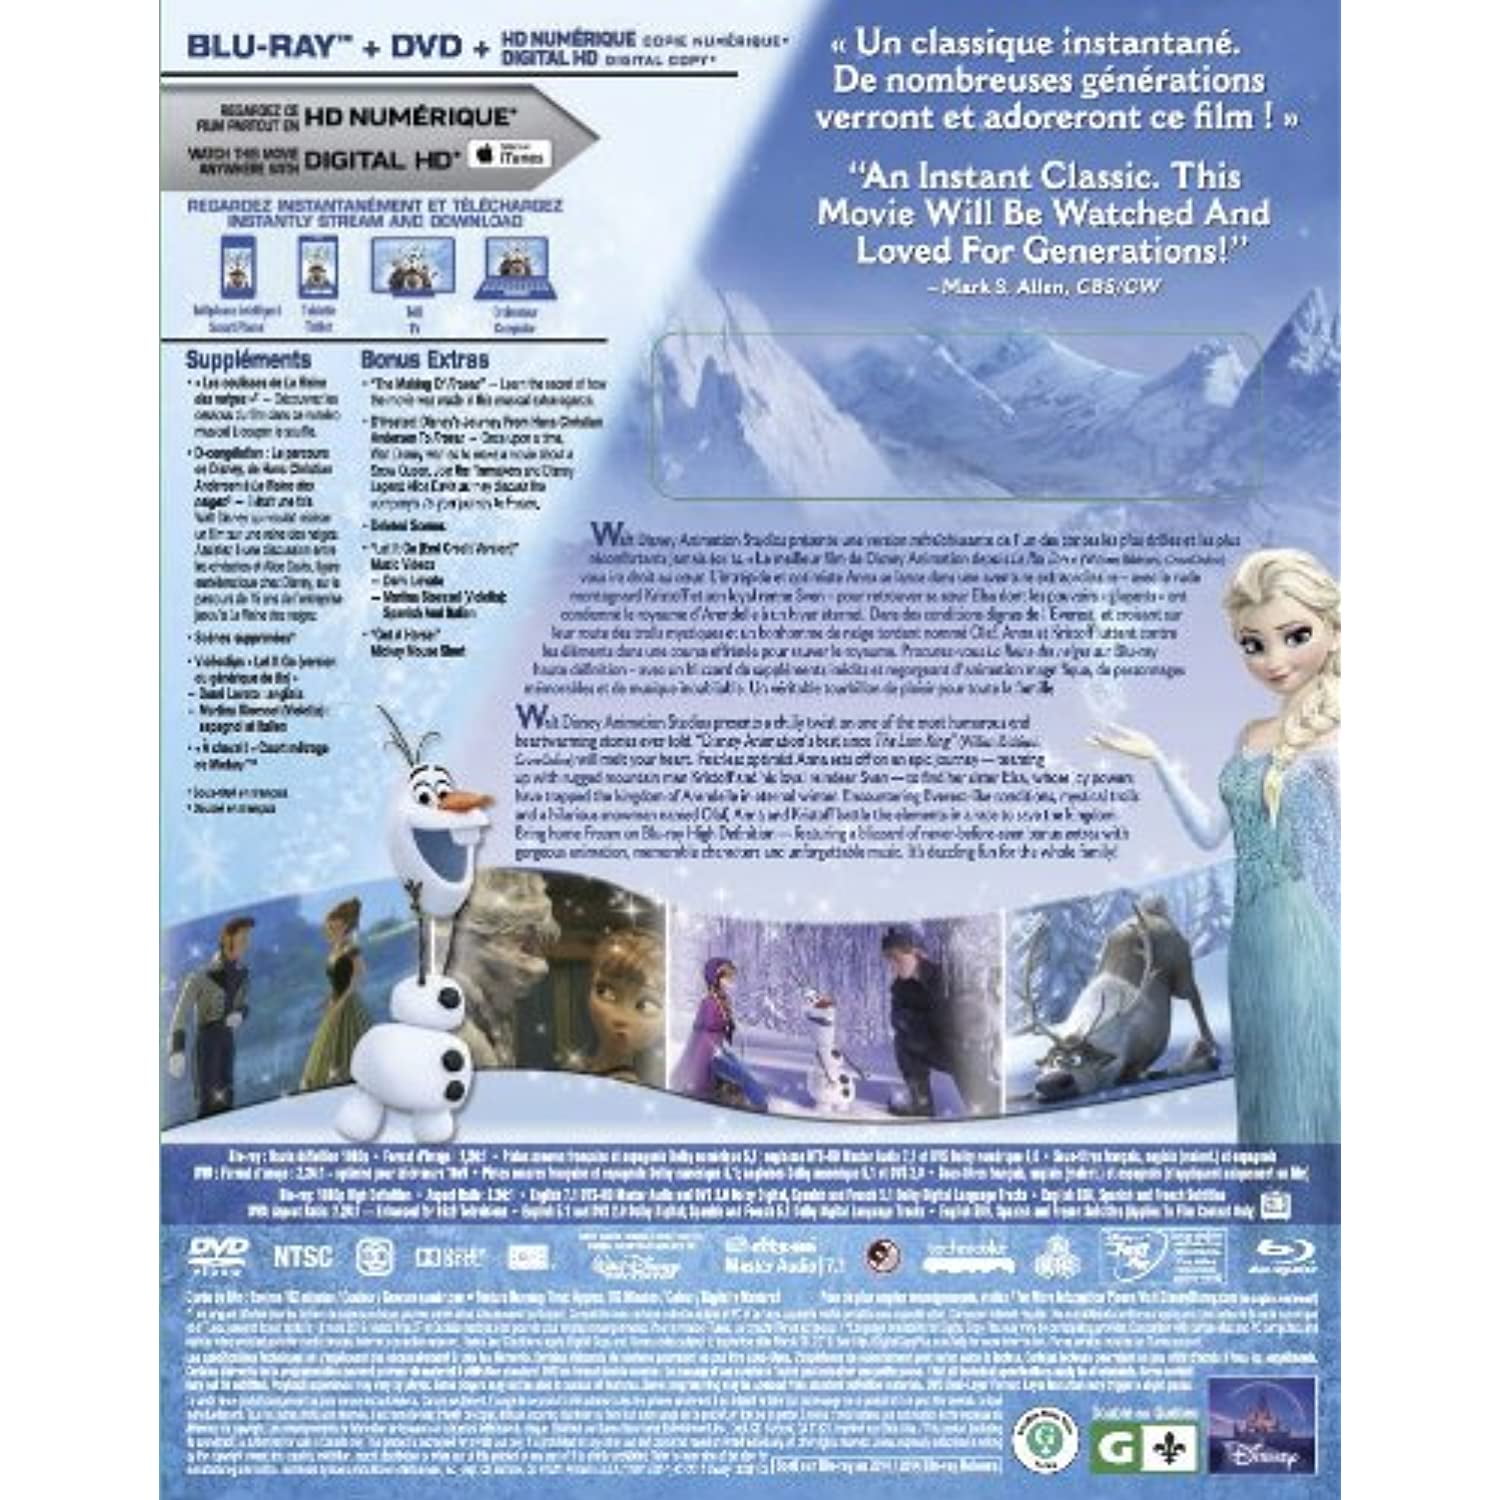 le reine des neiges in CDs, DVDs & Blu-ray in Québec - Kijiji Canada